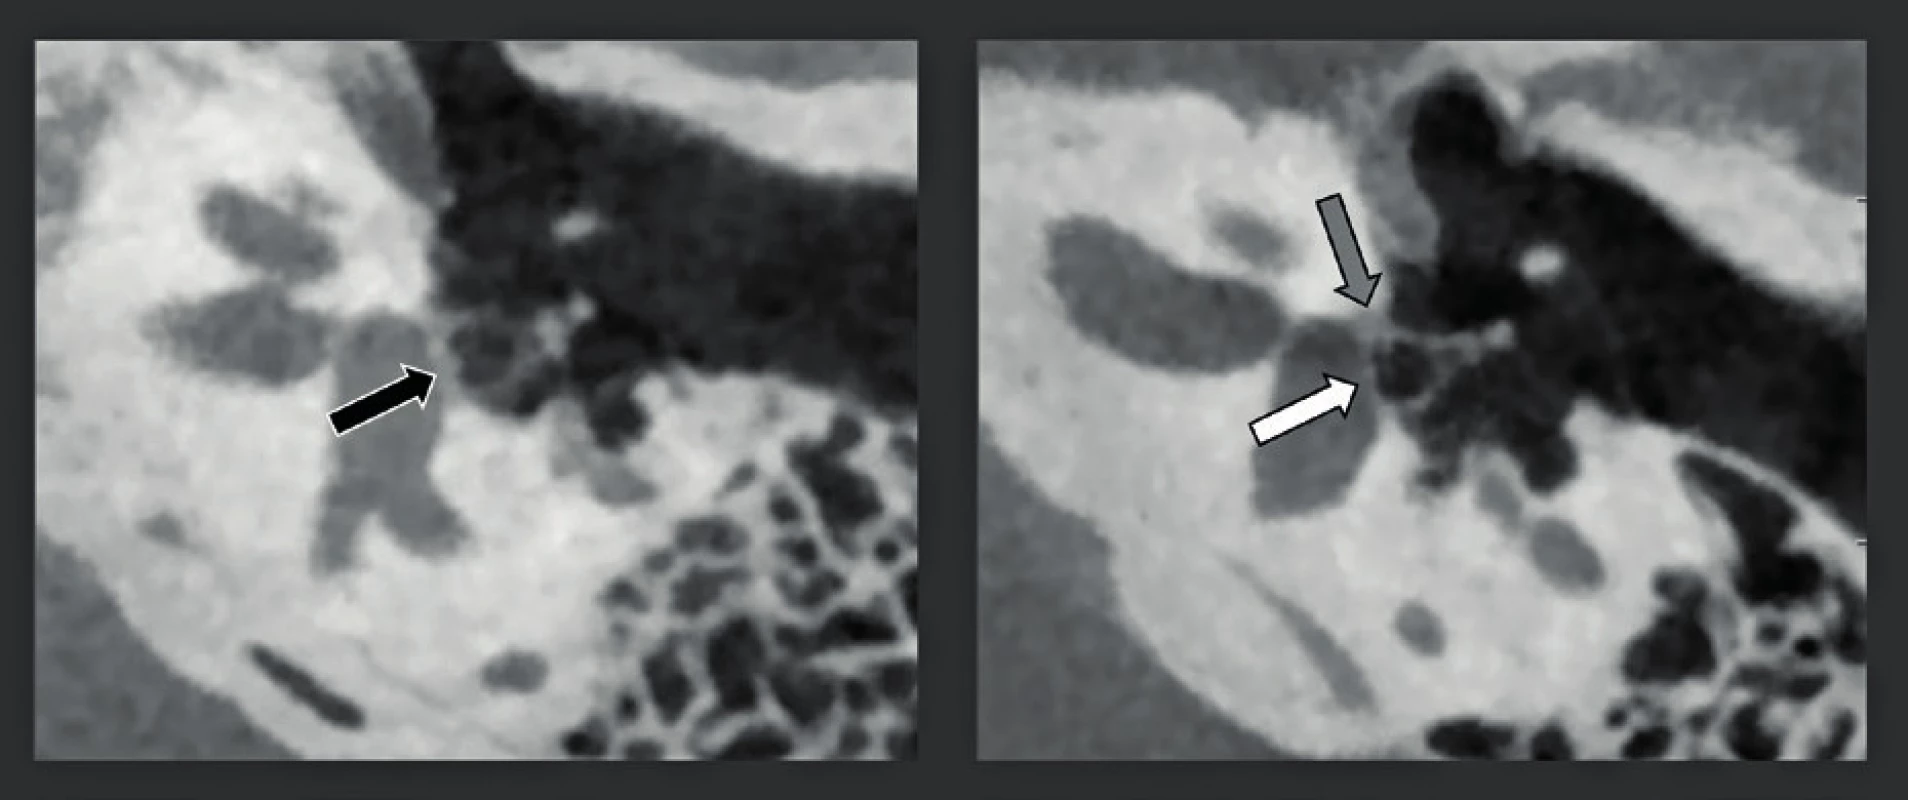 CBCT zdvojená šikmá rekonstrukce snímků středního ucha s vysokým rozlišením (rozlišení 150 μm) u dvou rozdílných pacientů s otosklerózou.